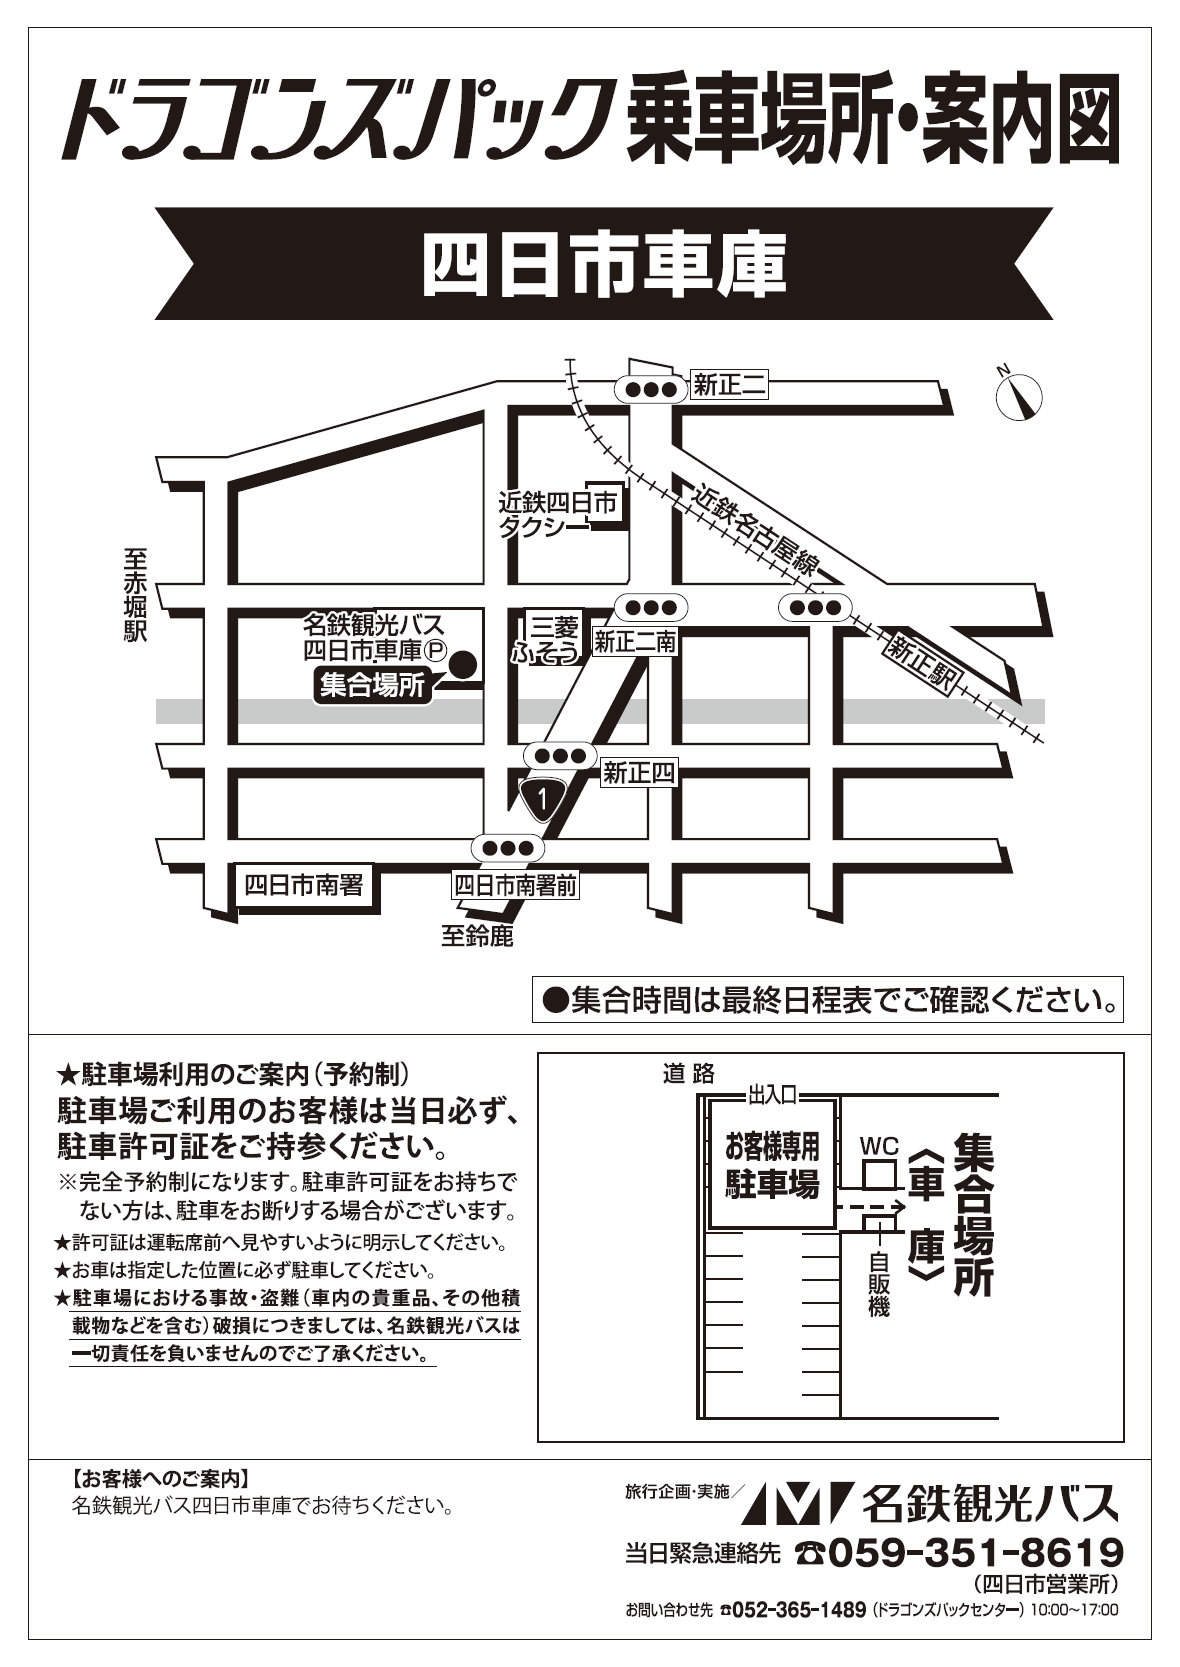 四日市車庫<br>(名鉄観光バス)広域地図